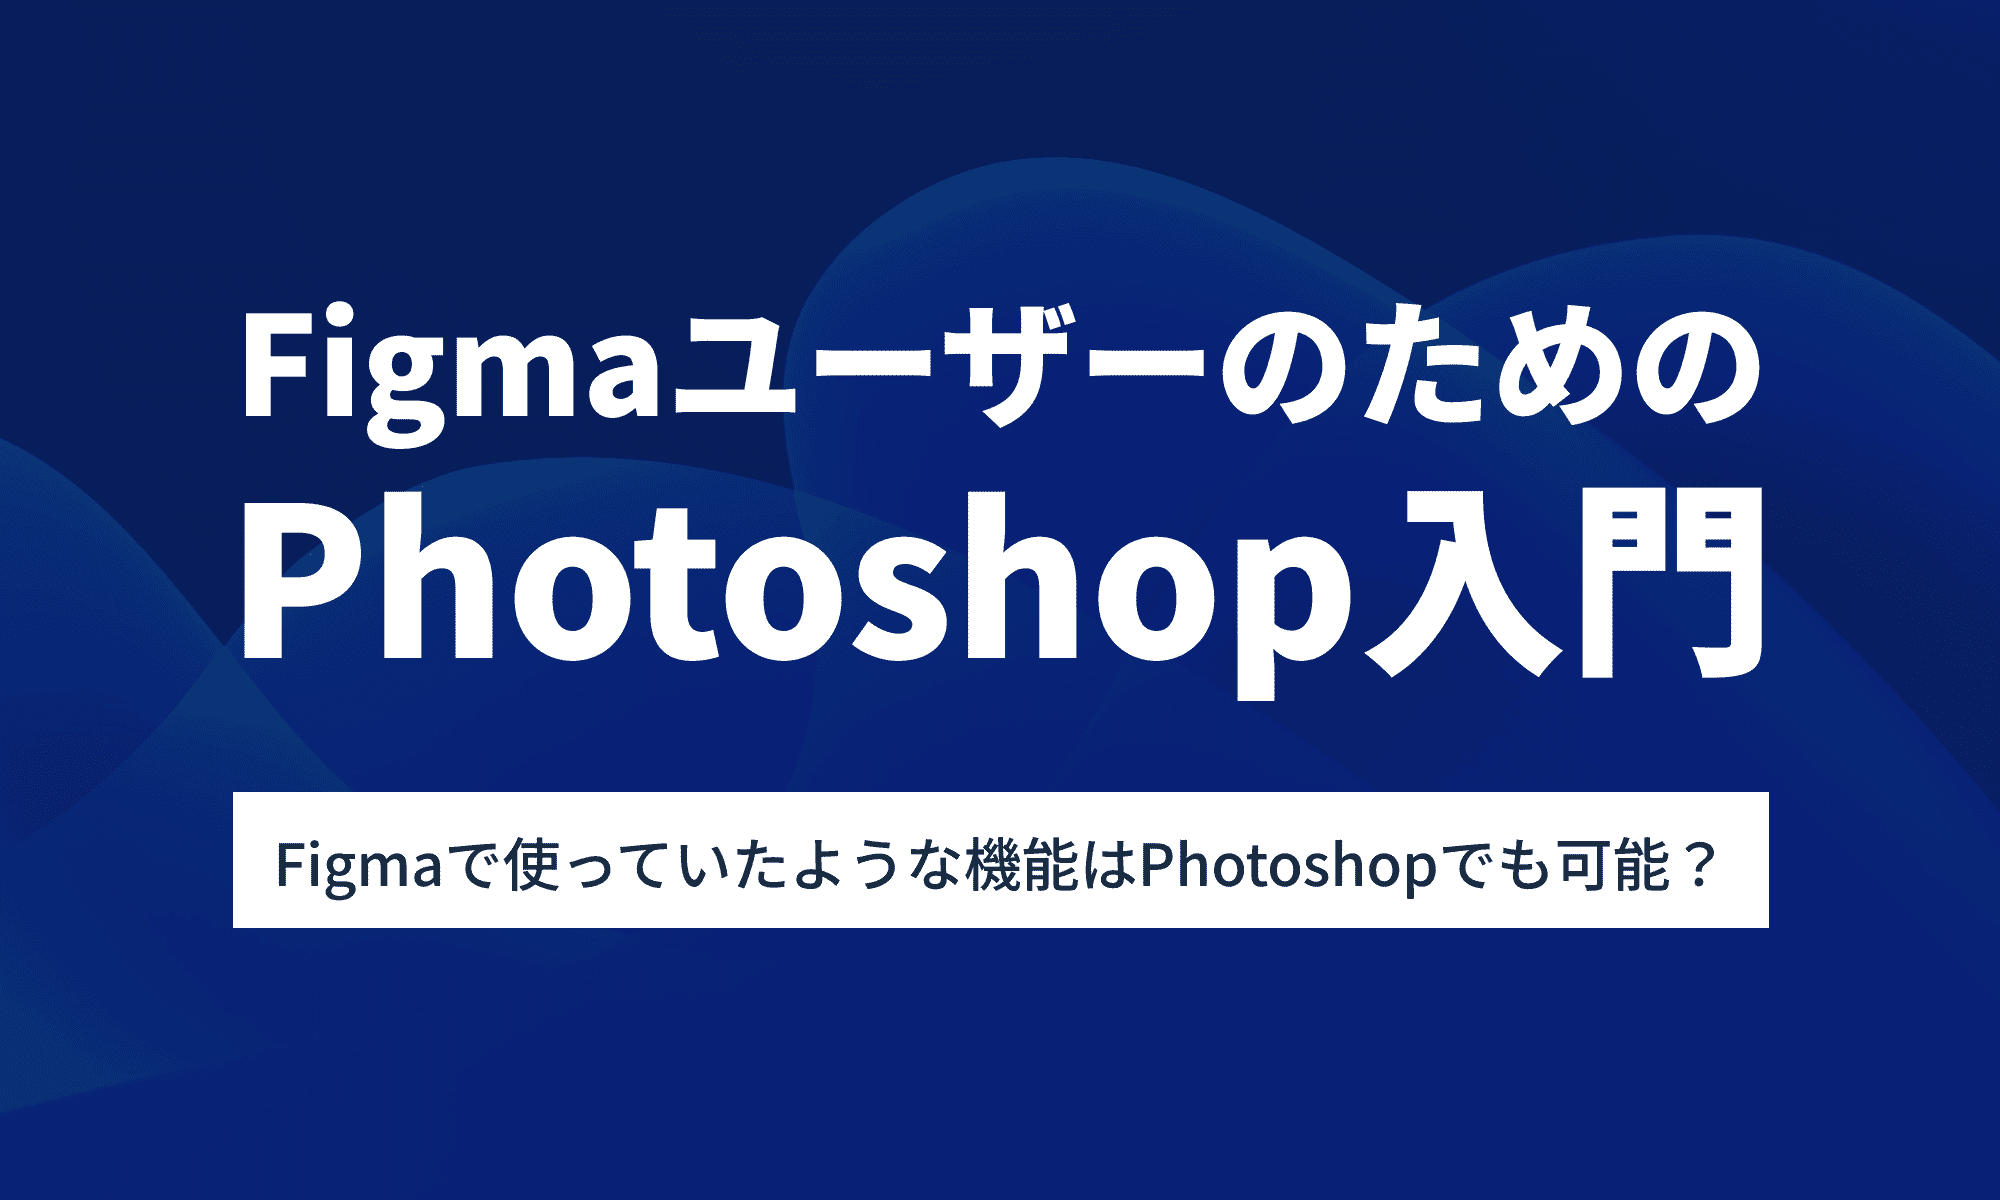 FigmaユーザーのためのPhotoshop入門